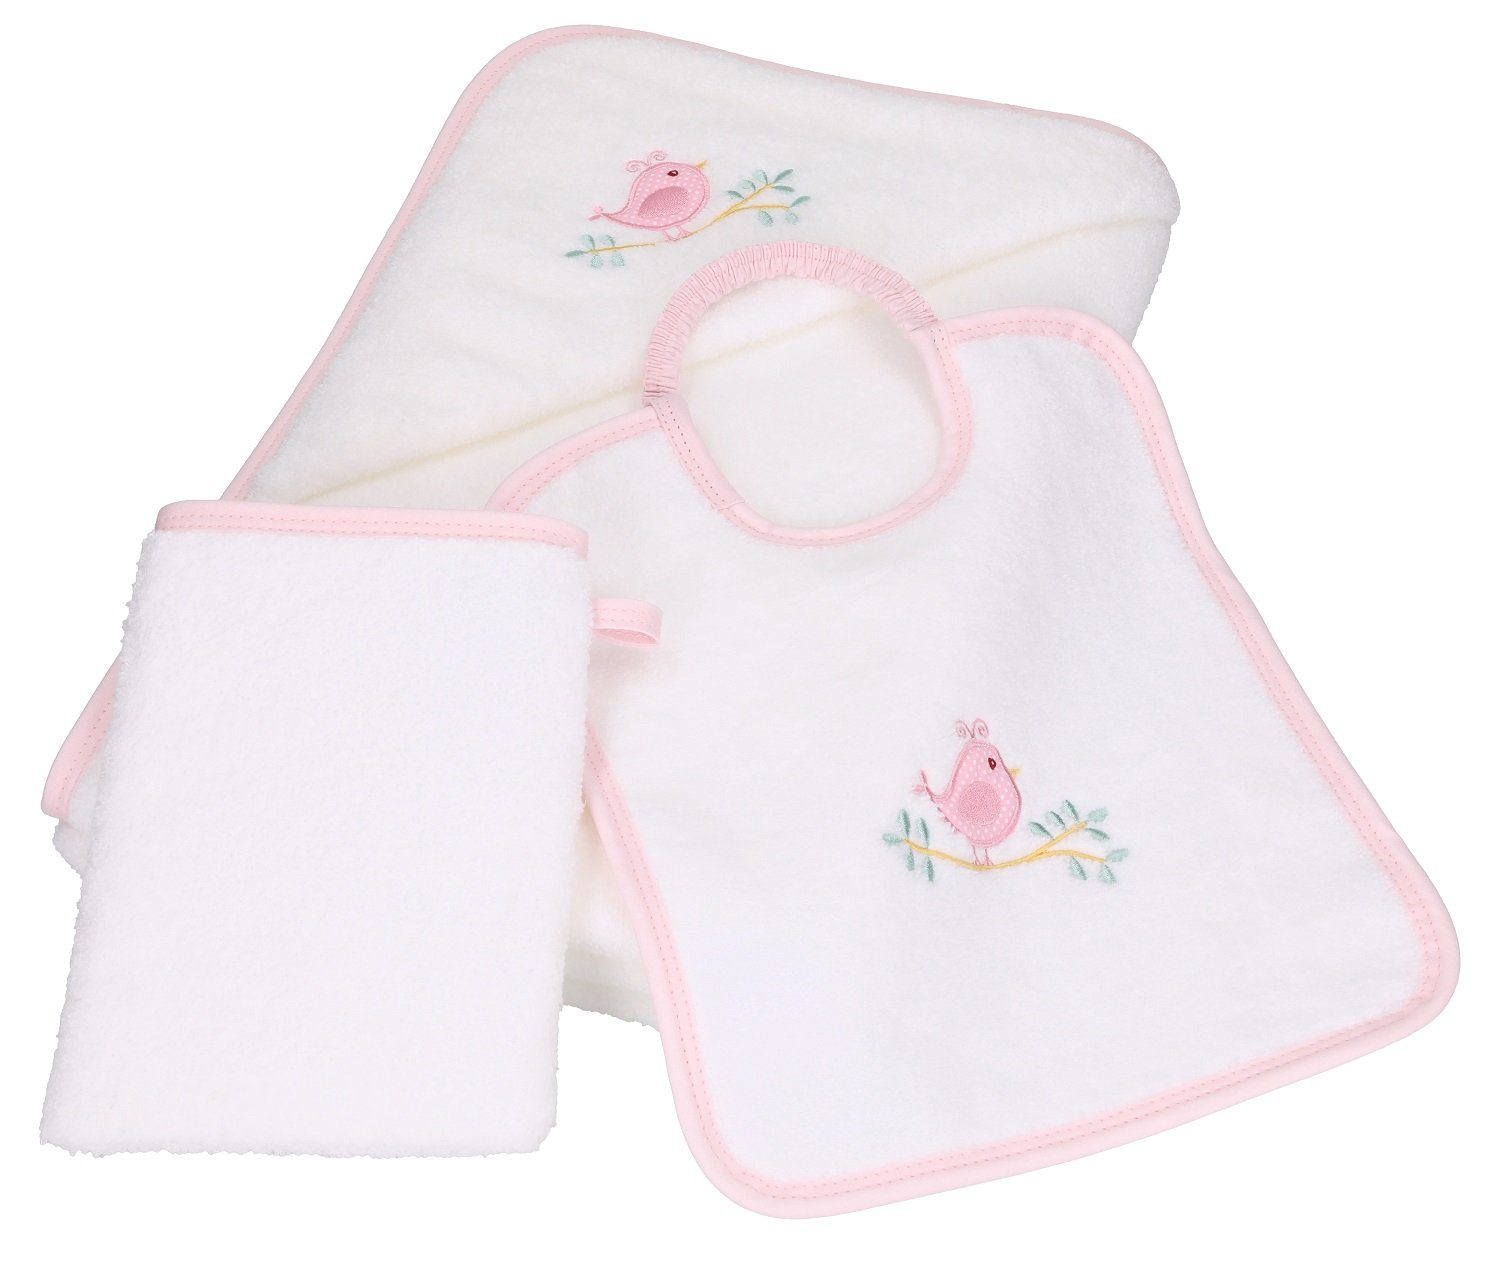 Baumwolle Kapuzenhandtuch weiß-rosé Betz Lätzchen 1 100% 1 Waschhandschuh, 3tlg VÖGELCHEN Kinderbadetuch Babyset 1